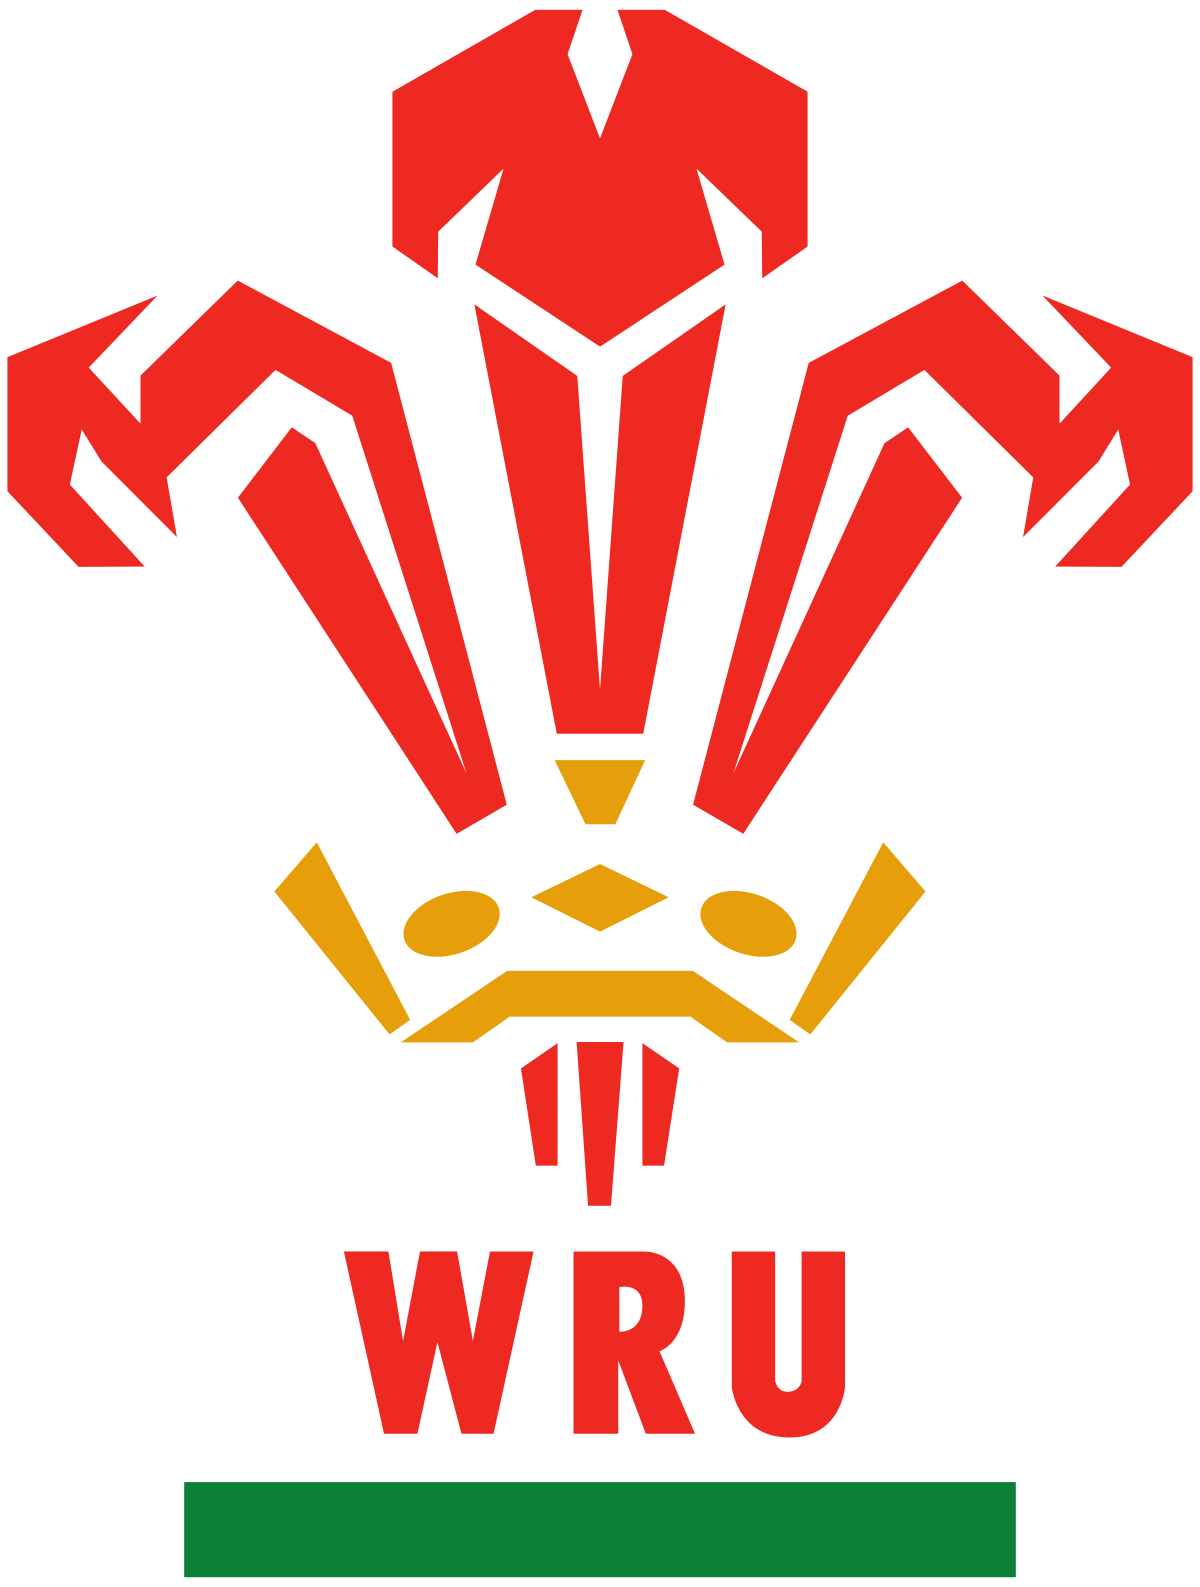 Welsh Union Team Meet & Greet